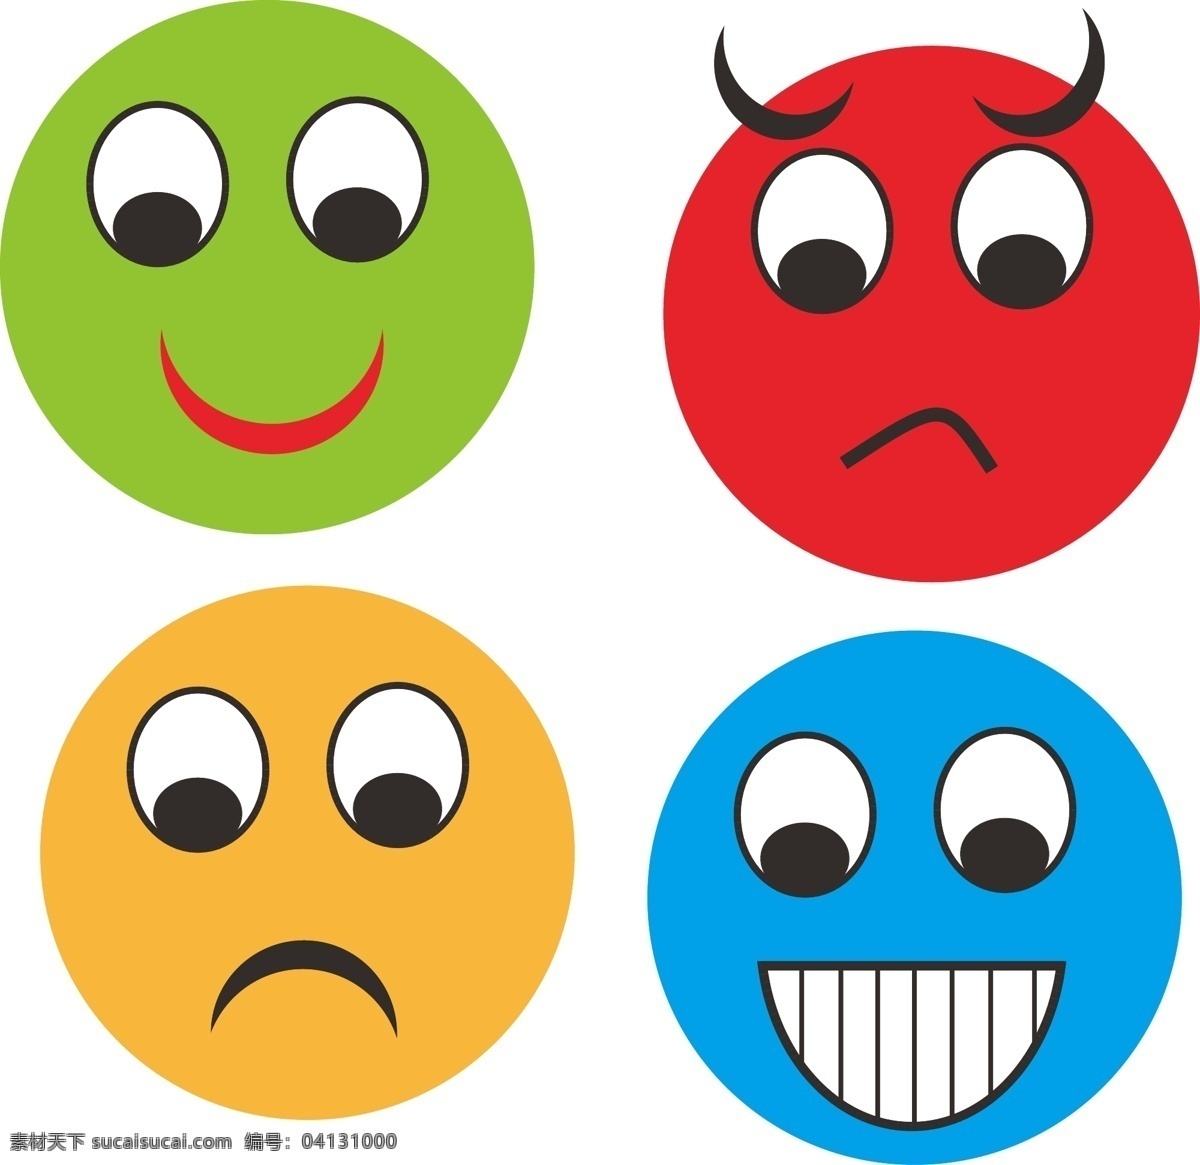 qq表情图 喜怒哀乐表情 四色表情 红色表情 蓝色表情 黄色表情 绿色表情 包装设计